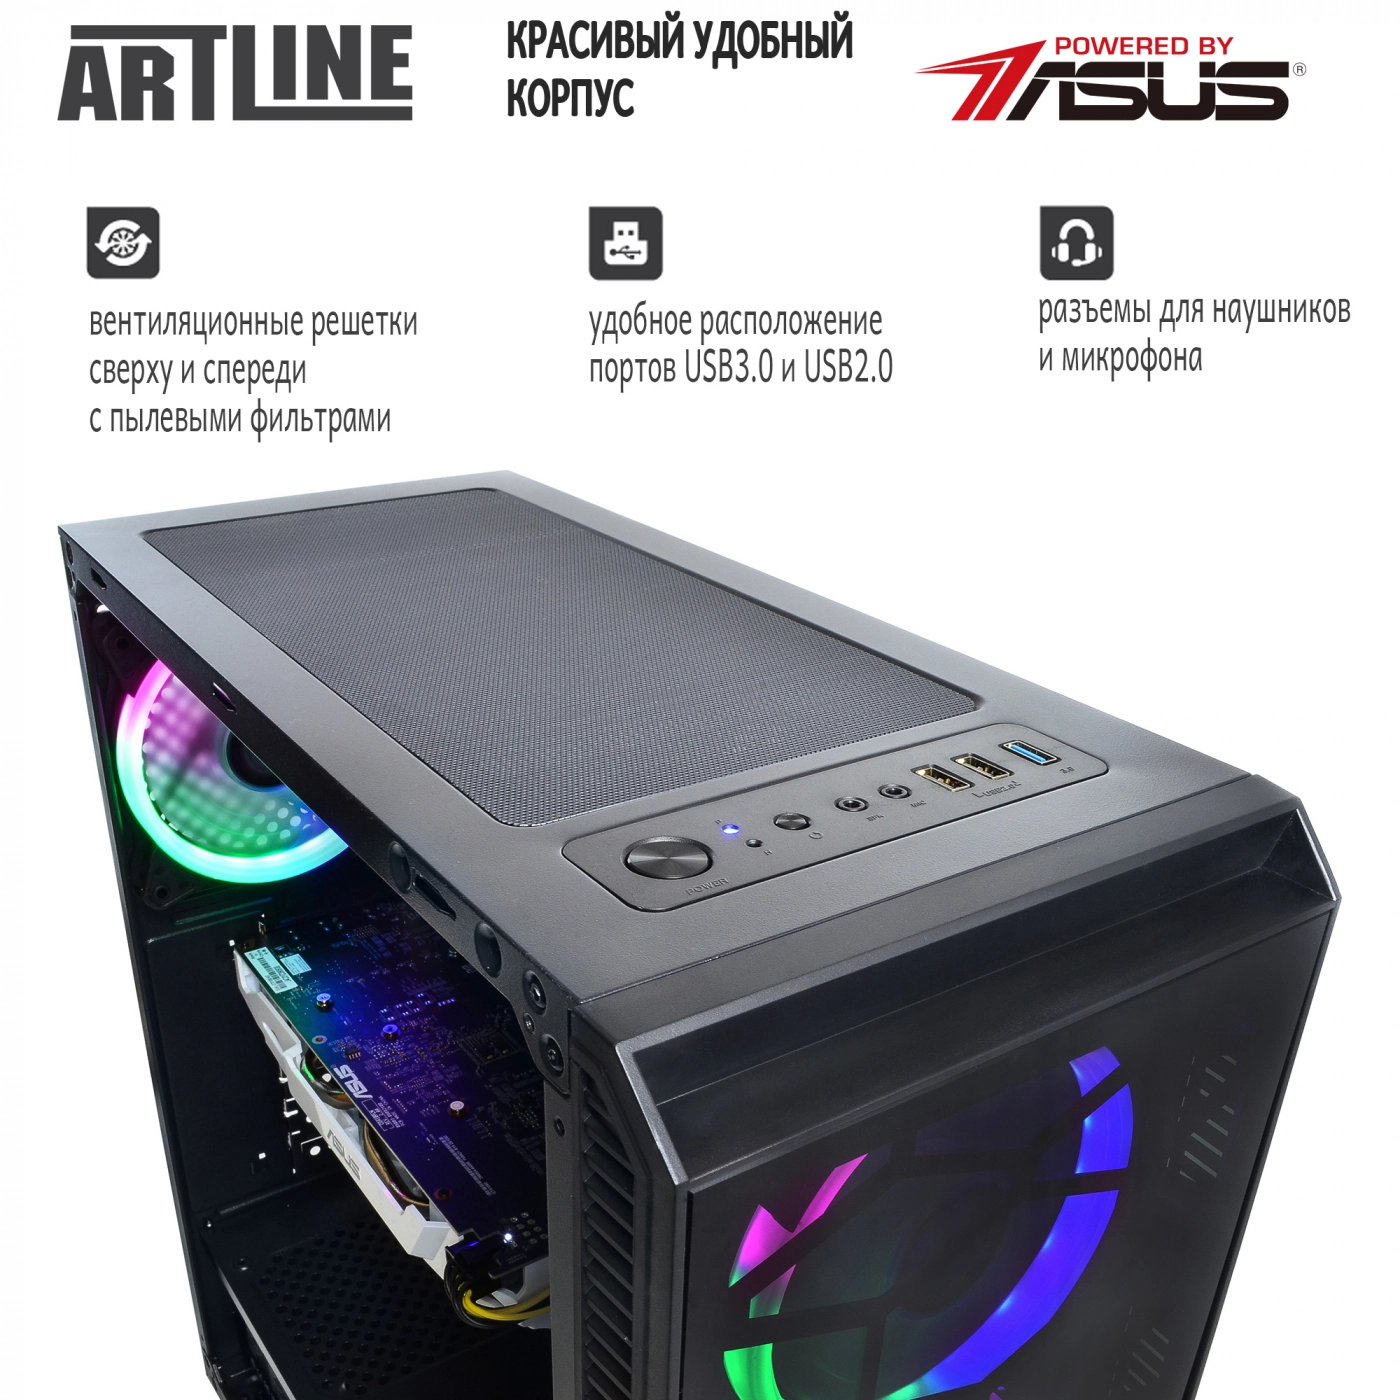 Купить Компьютер ARTLINE Gaming X43v05 - фото 4